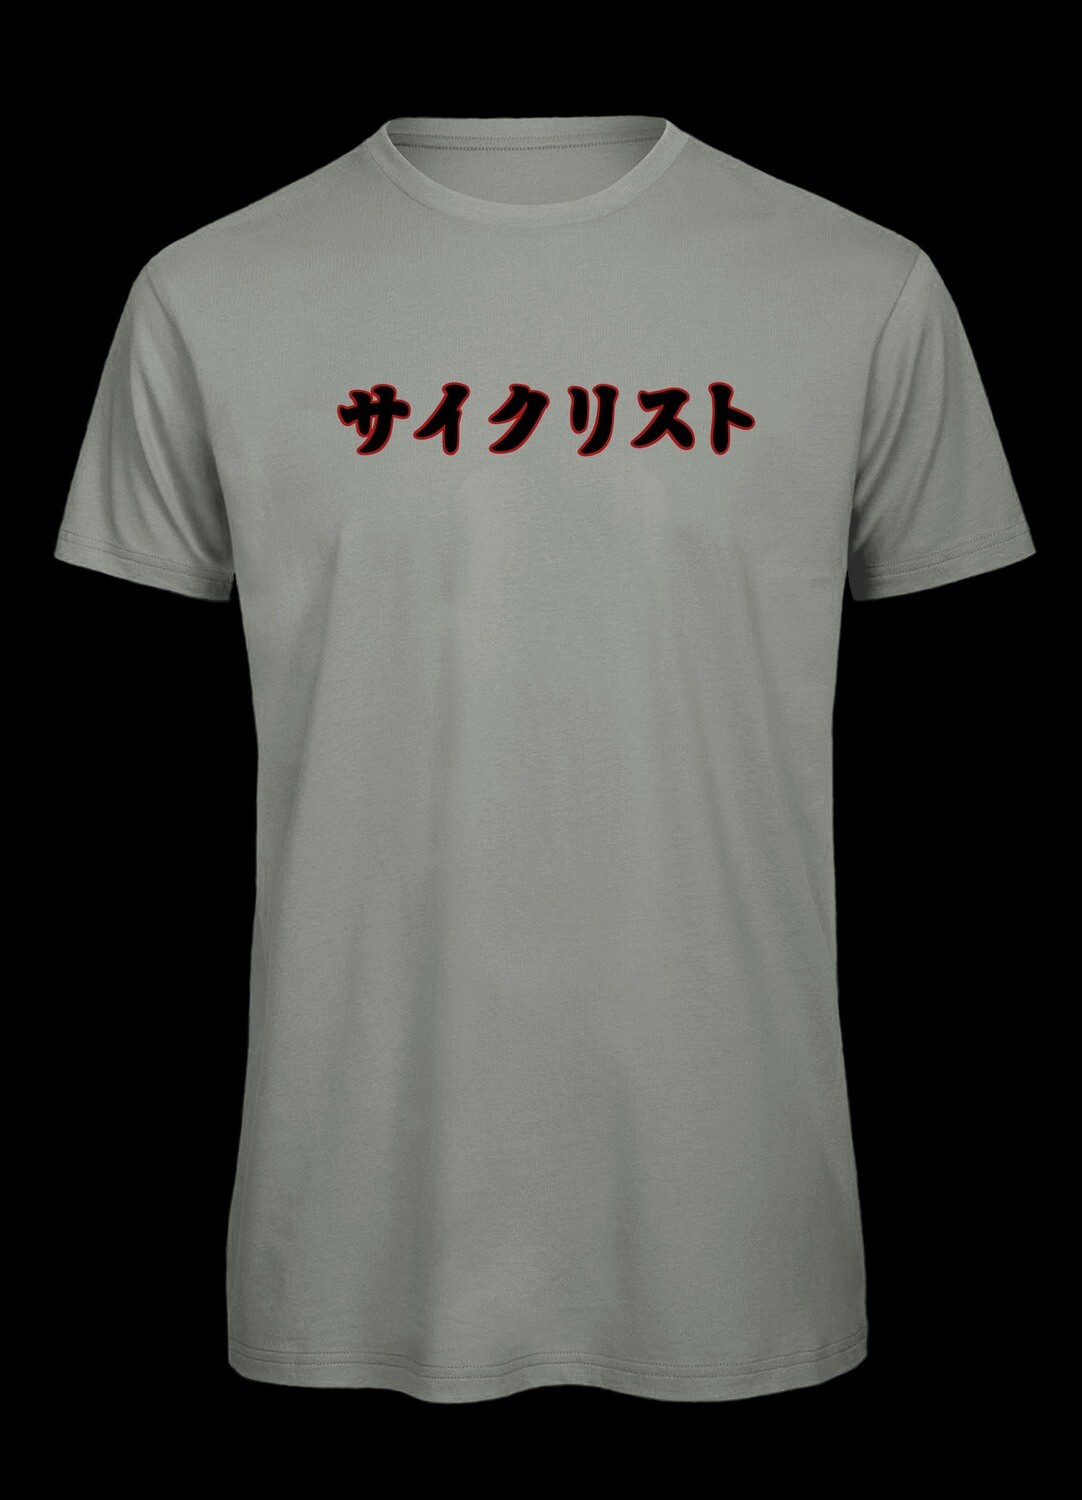 Saikurisuto, Fahrradfahrer T-Shirt